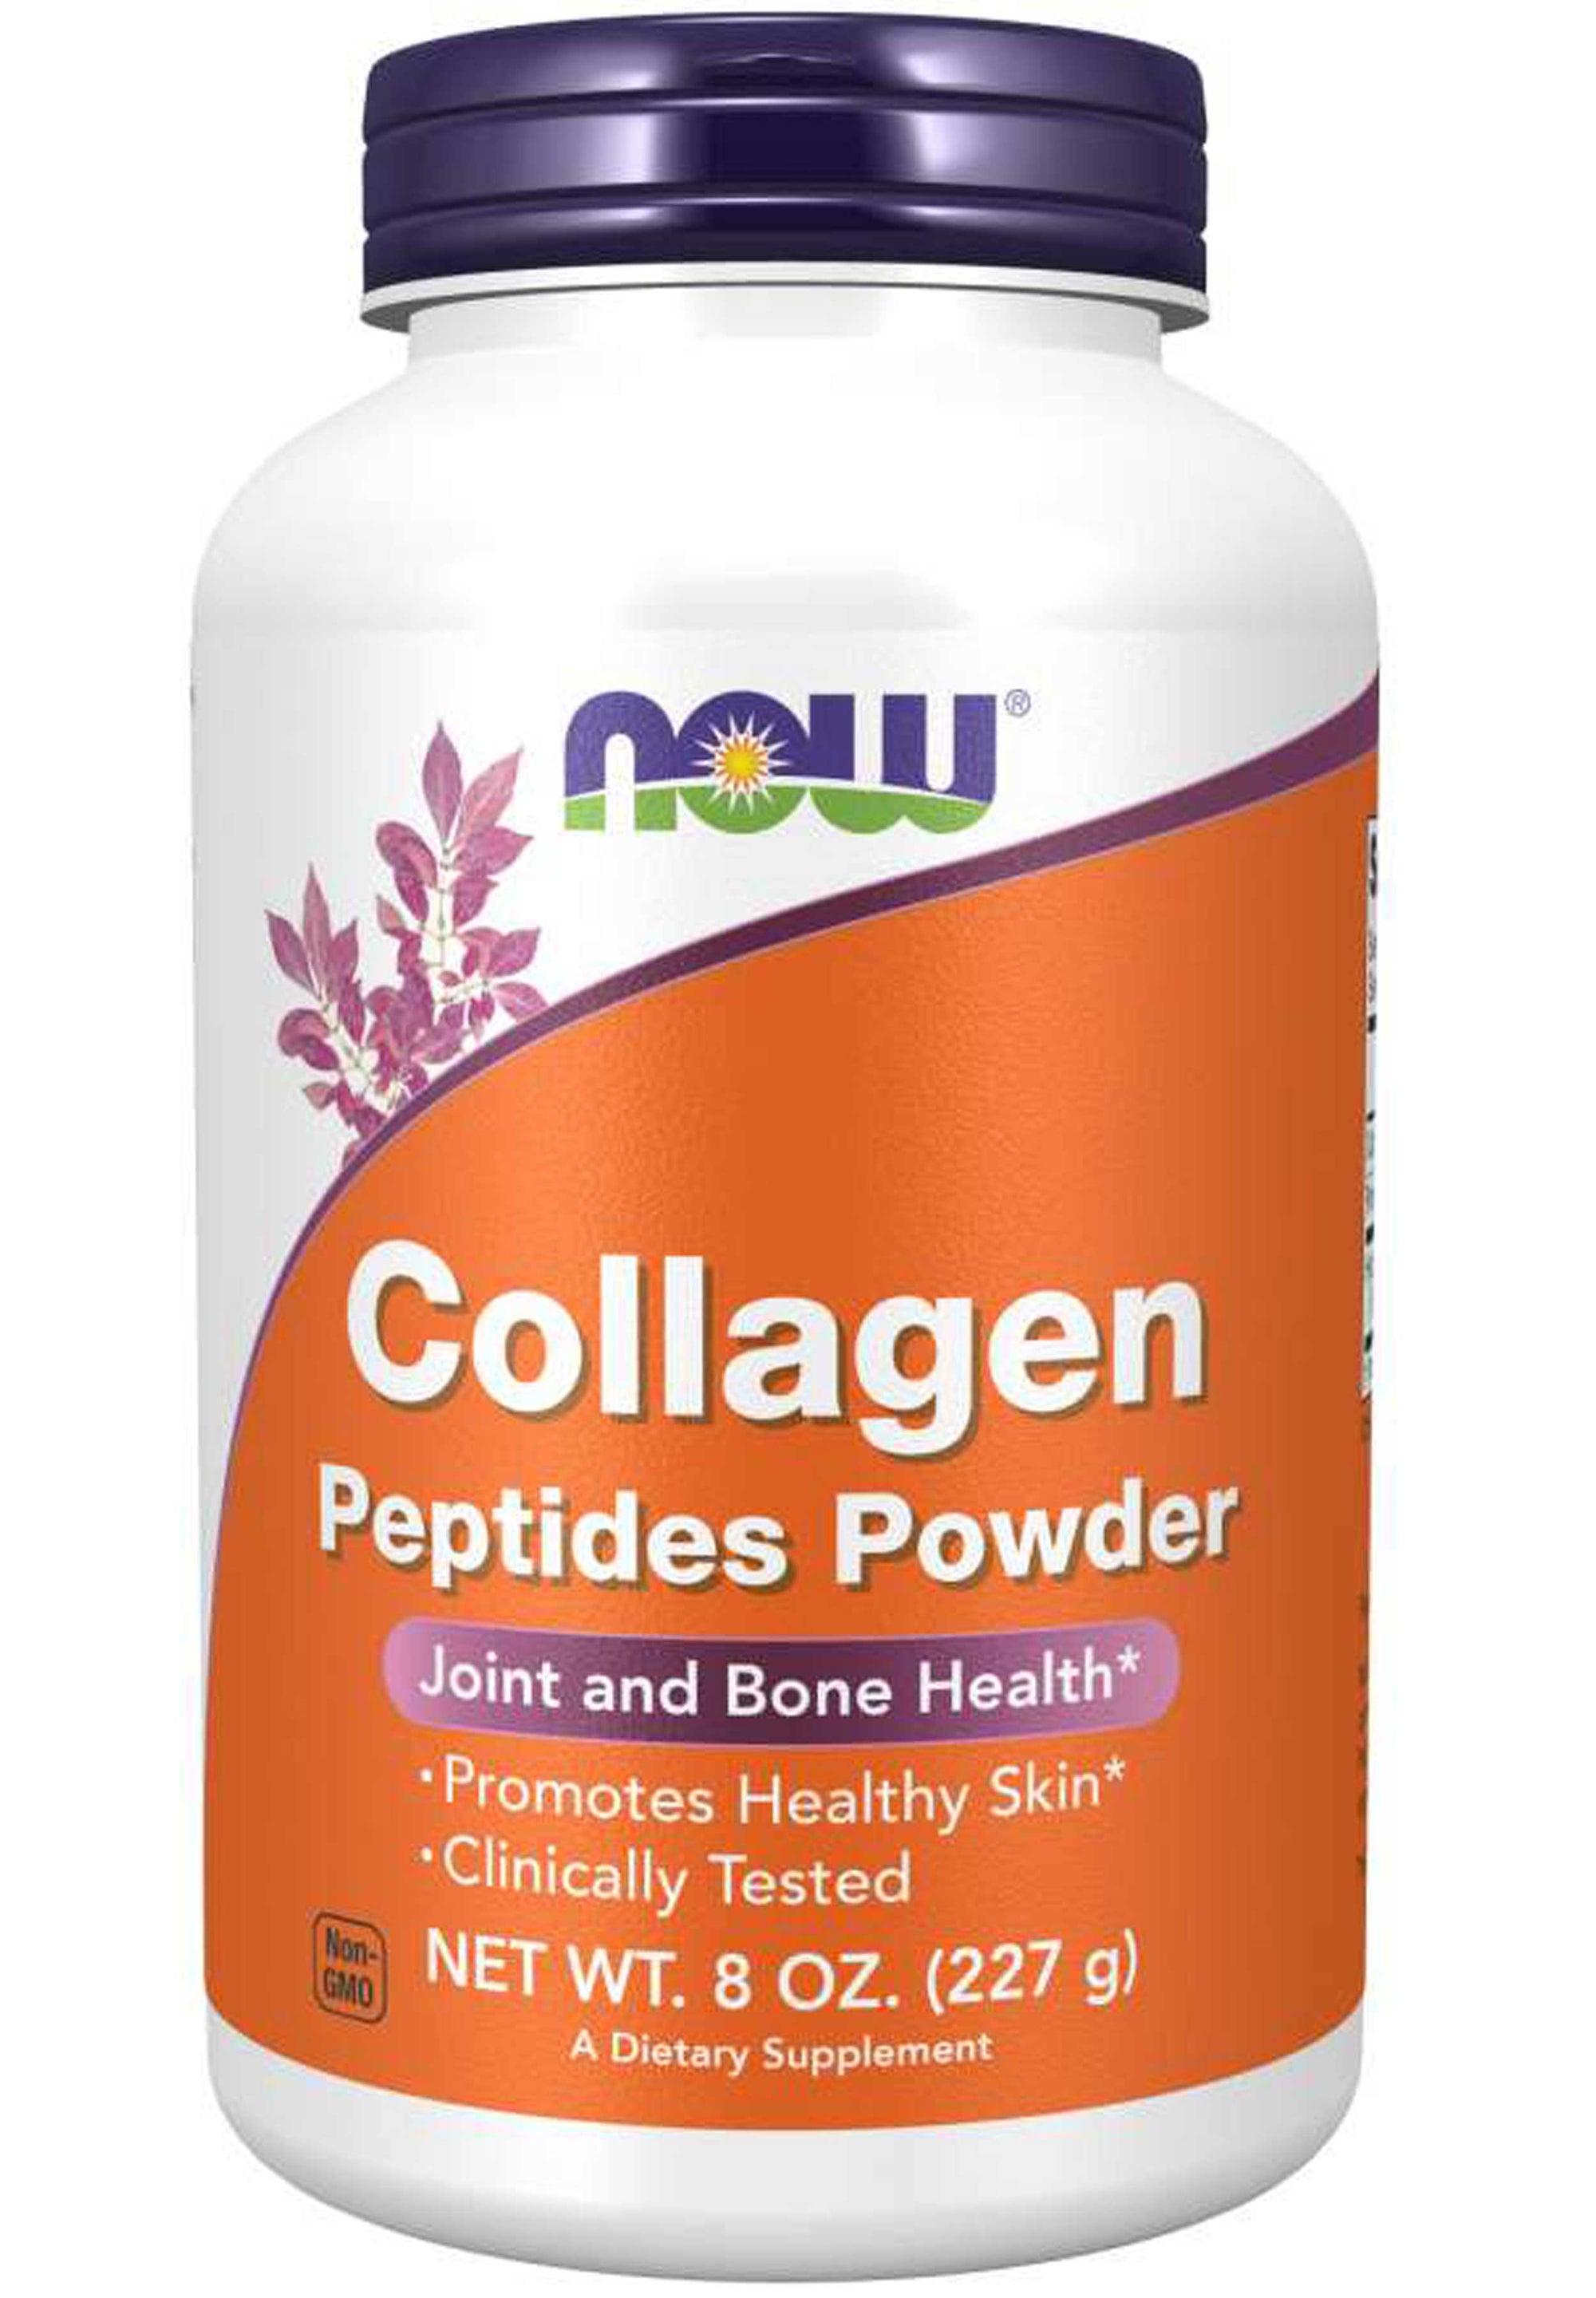 NOW Collagen Peptides Powder Supplement First